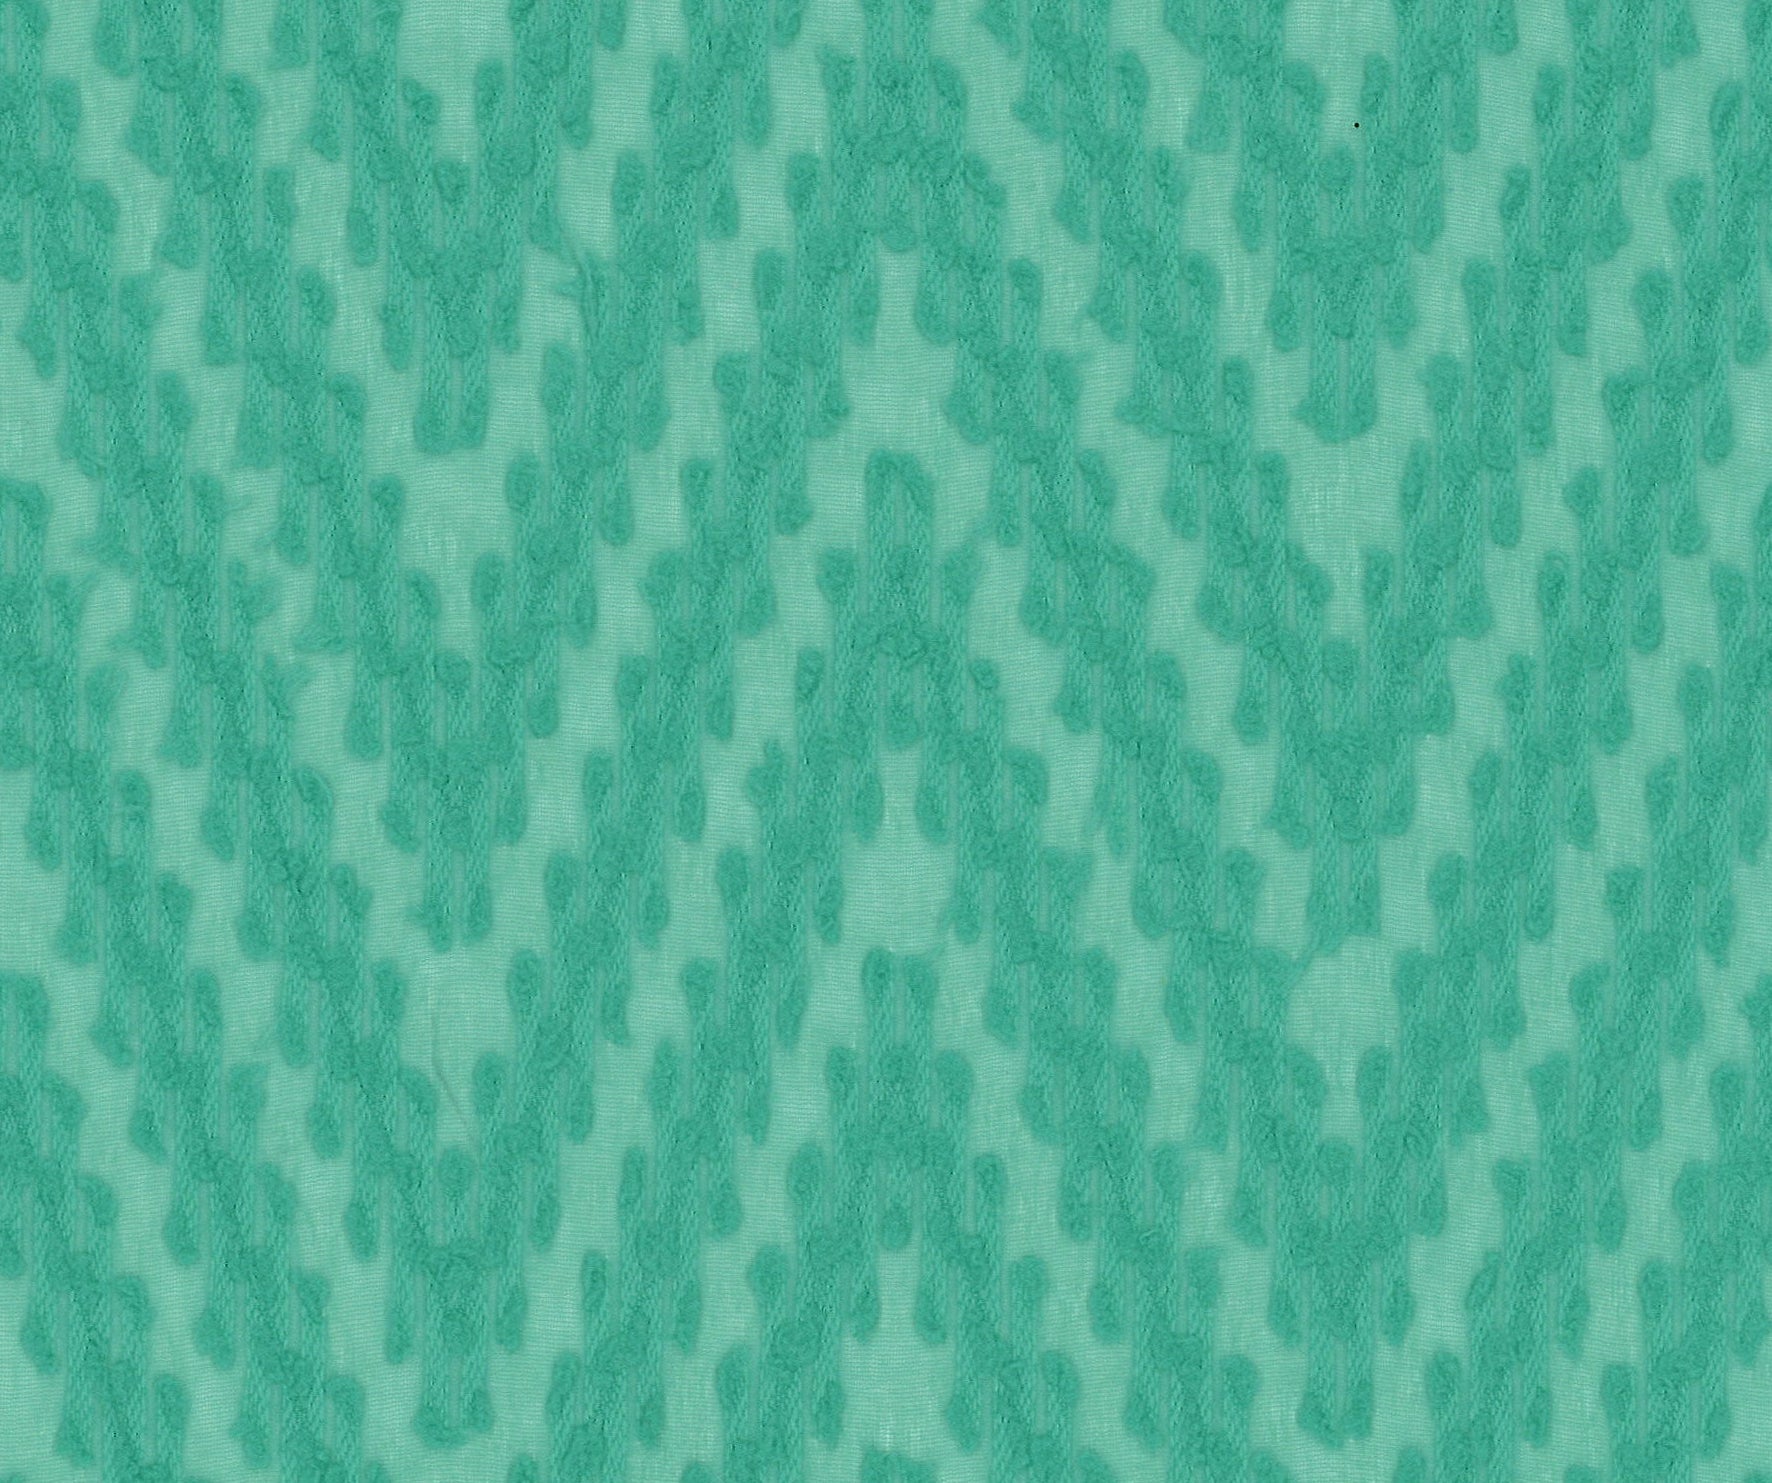 9958-04 Marine Green Polyester Chiffon Winding Pattern Jacquard Plain Dyed 100% 110g/yd 58" chiffon green jacquard plain dyed polyester woven Chiffon, Jacquard - knit fabric - woven fabric - fabric company - fabric wholesale - fabric b2b - fabric factory - high quality fabric - hong kong fabric - fabric hk - acetate fabric - cotton fabric - linen fabric - metallic fabric - nylon fabric - polyester fabric - spandex fabric - chun wing hing - cwh hk - fabric worldwide ship - 針織布 - 梳織布 - 布料公司- 布料批發 - 香港布料 - 秦榮興